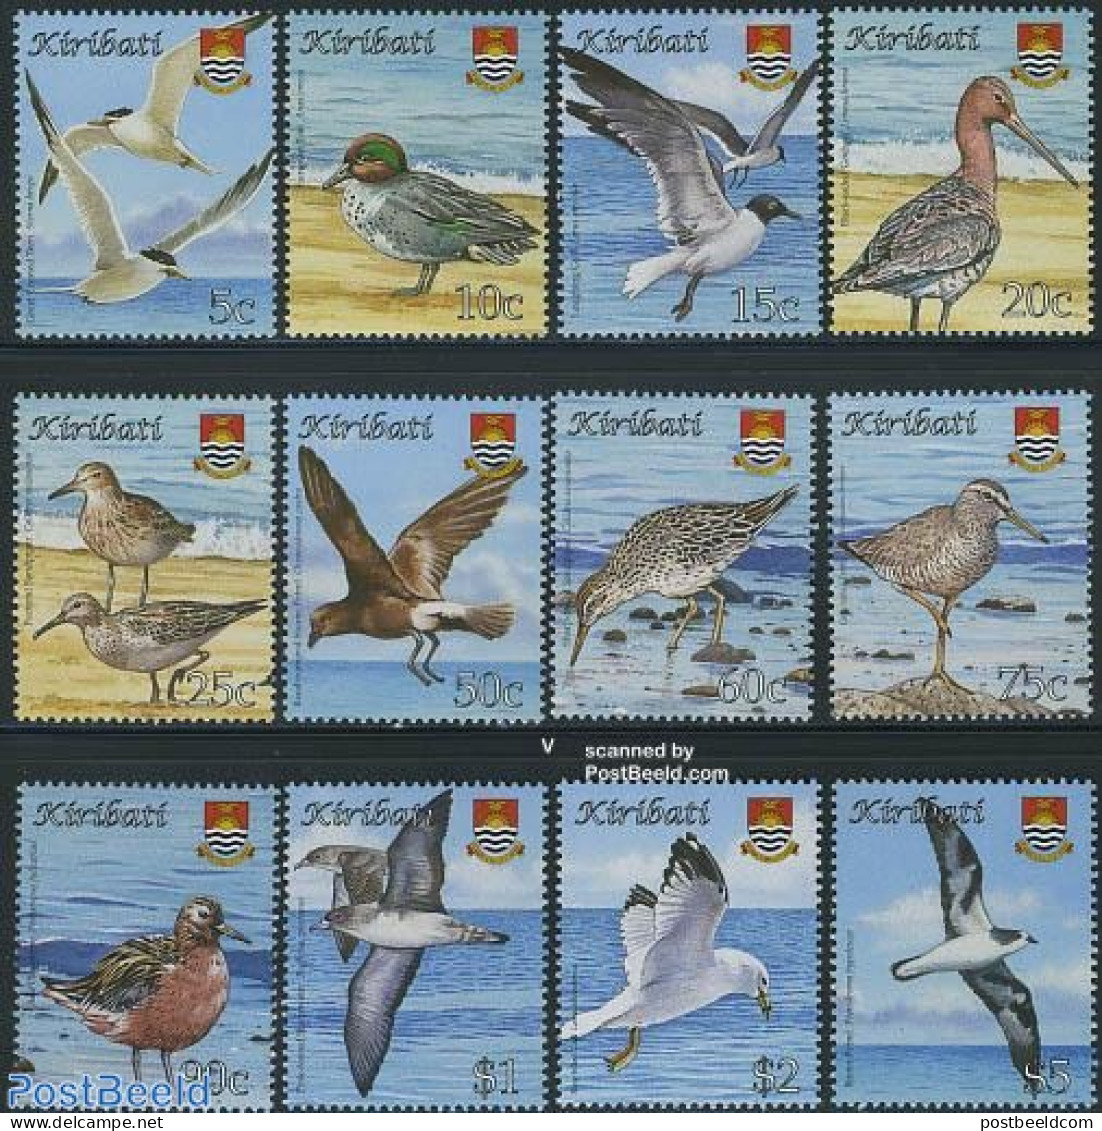 Kiribati 2008 Definitives, Birds 12v, Mint NH, Nature - Birds - Ducks - Kiribati (1979-...)